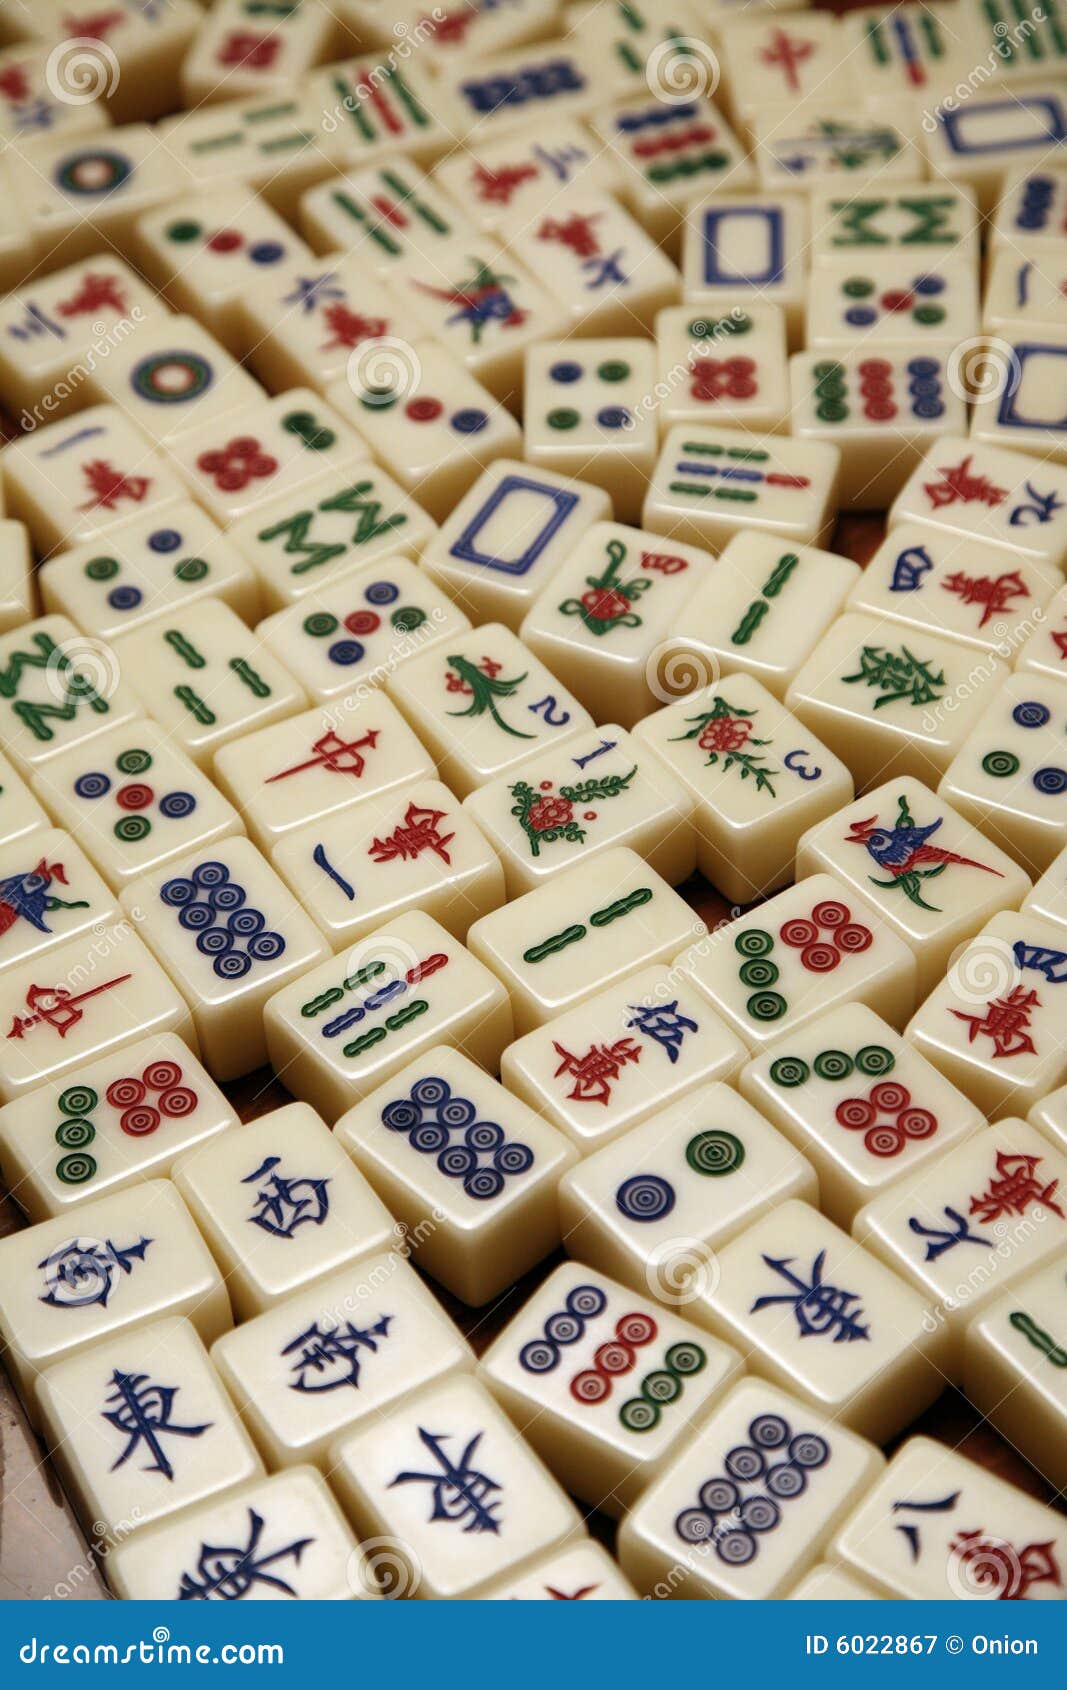 Fotos Telhas Mahjong, 56.000+ fotos de arquivo grátis de alta qualidade